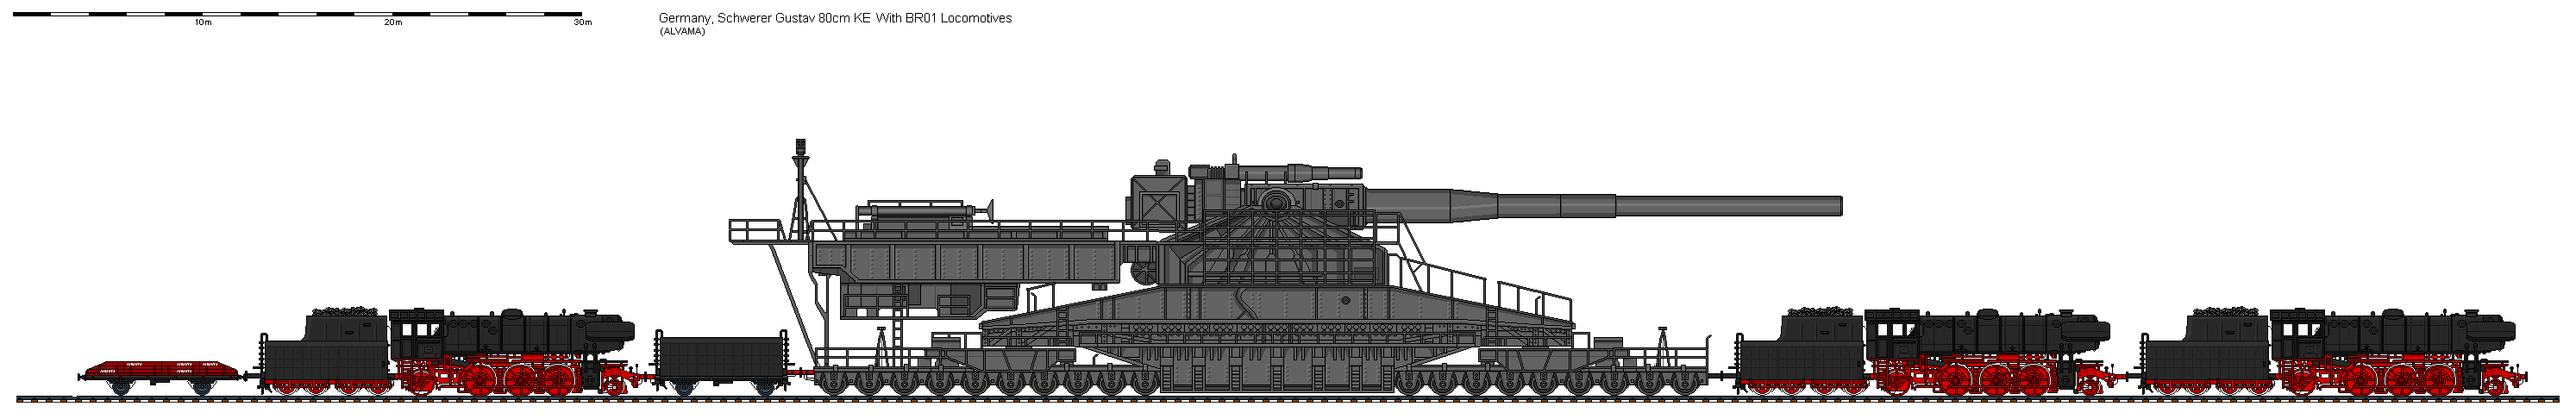 1/700 Scale Schwerer Gustav 80cm Railroad Gun (L98SMFP3Y) by wachapman